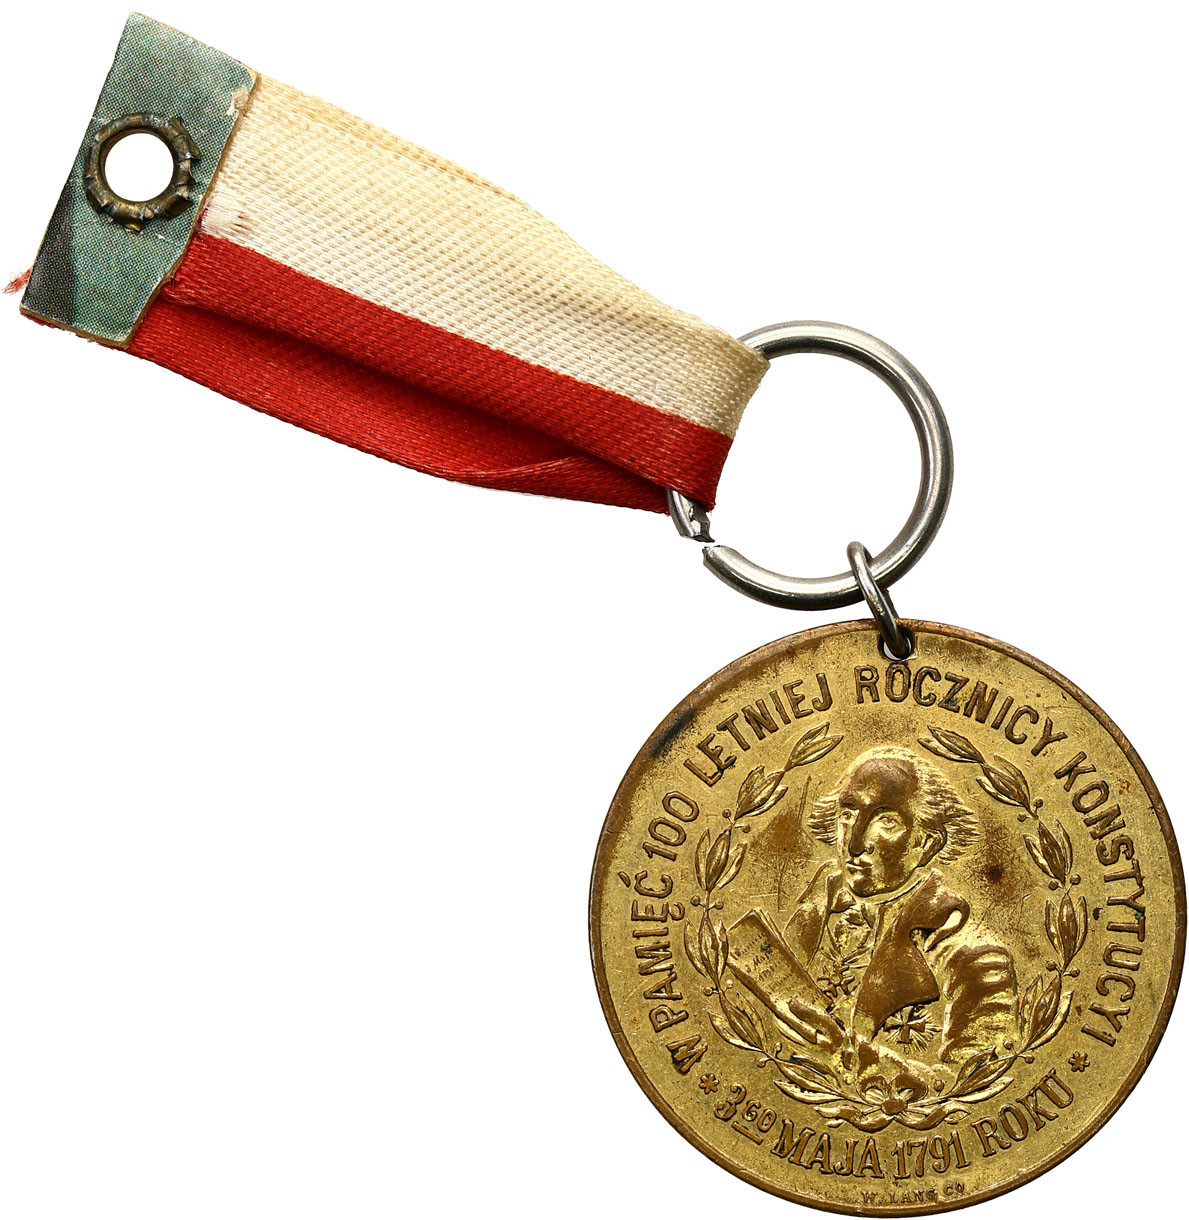 Polska pod Zaborami. Medal 100 lecie rocznicy Konstytucji 3 maja 1891, Nowy Jork